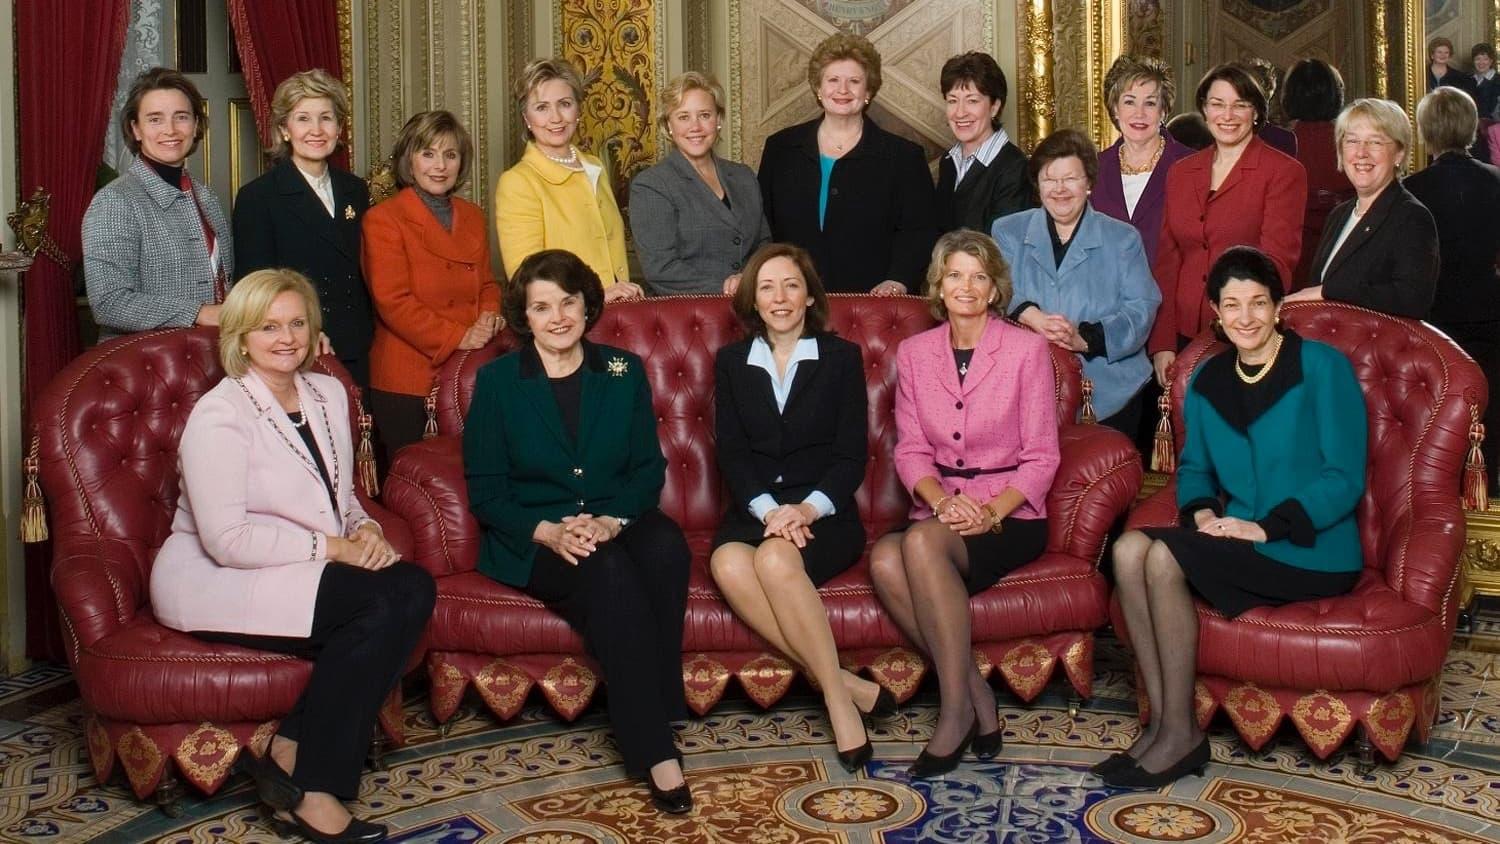 14 Women backdrop